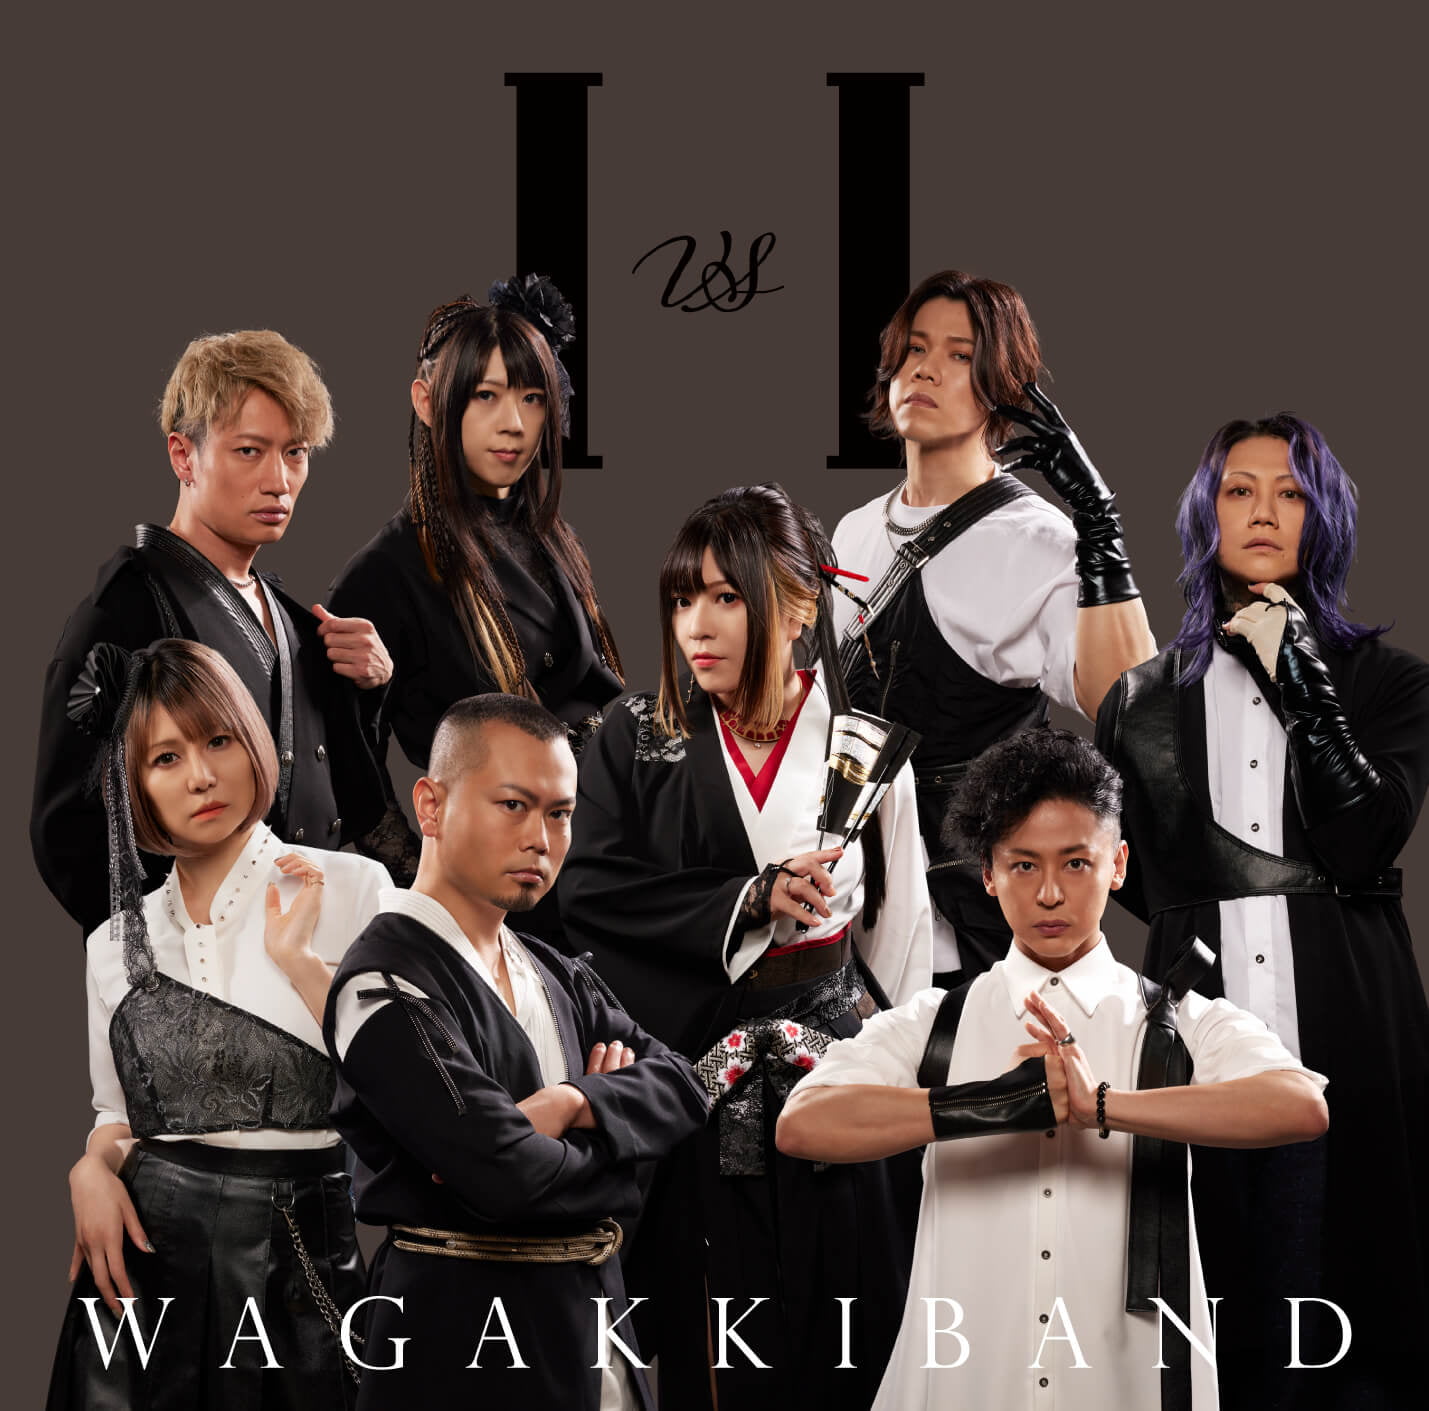 和楽器バンド*WagakkiBand New Album『I vs I』SPECIAL SITE